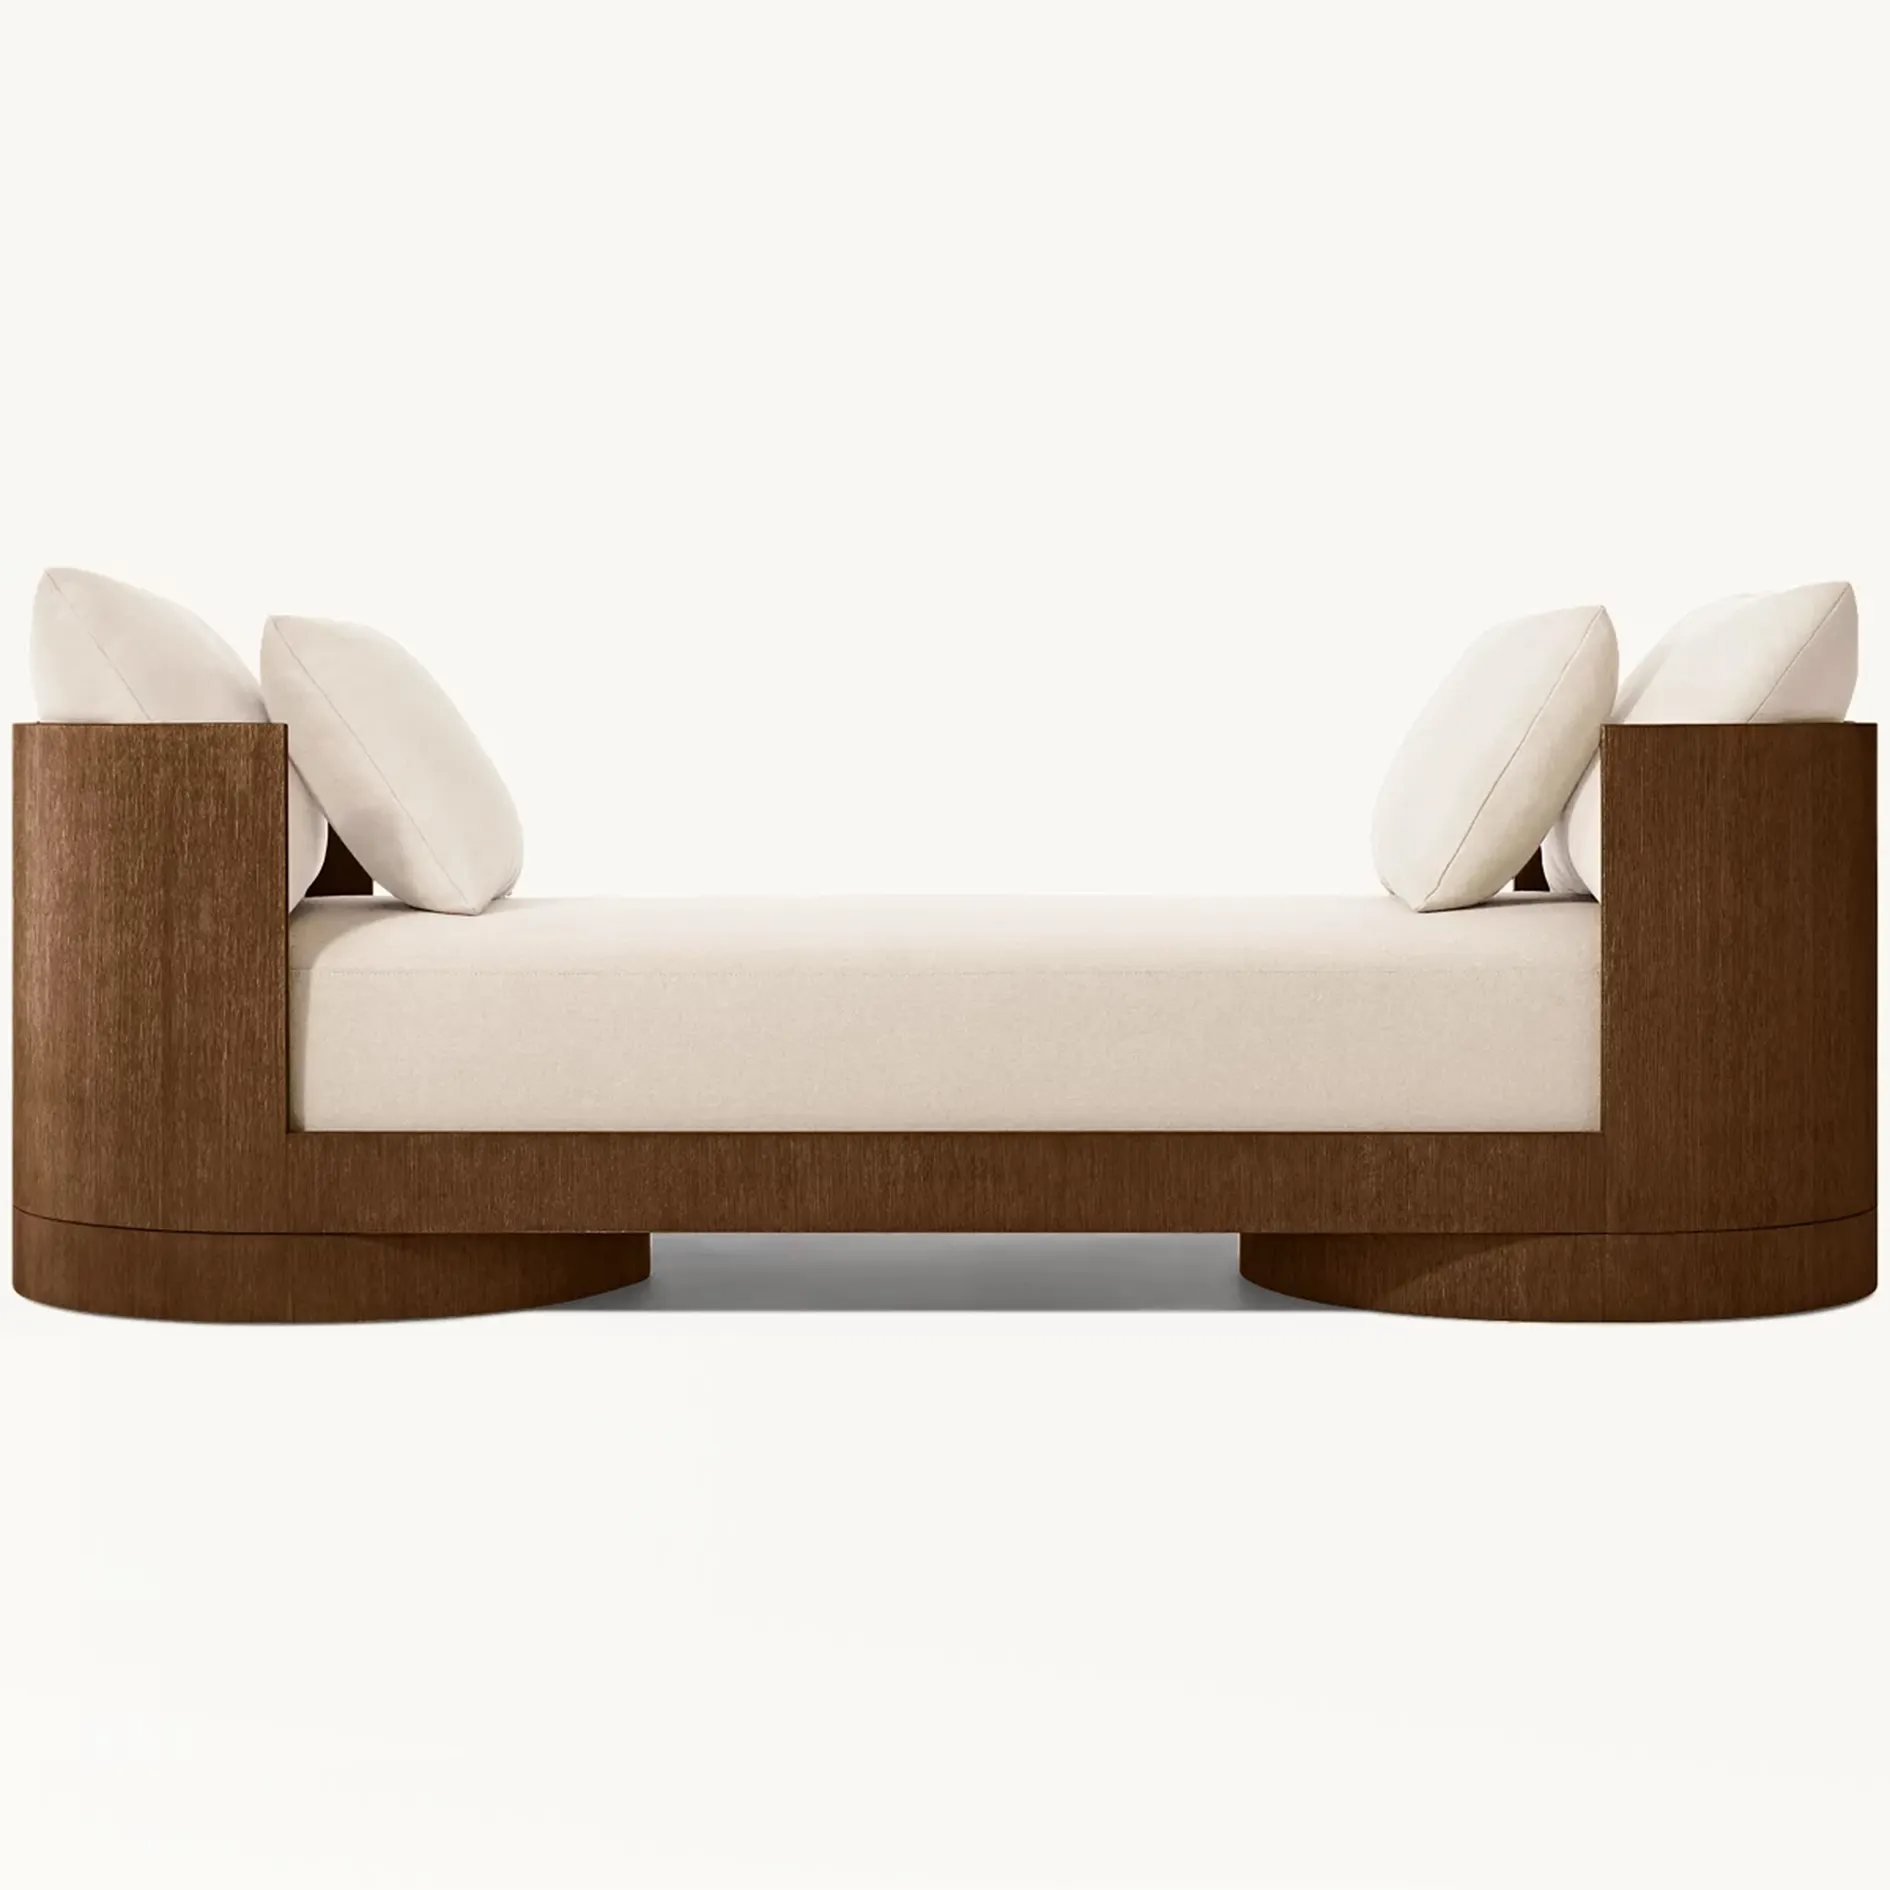 Hand gefertigte Wohnzimmer Massivholz möbel Luxus bequeme Freizeit Daybed Indoor Modern